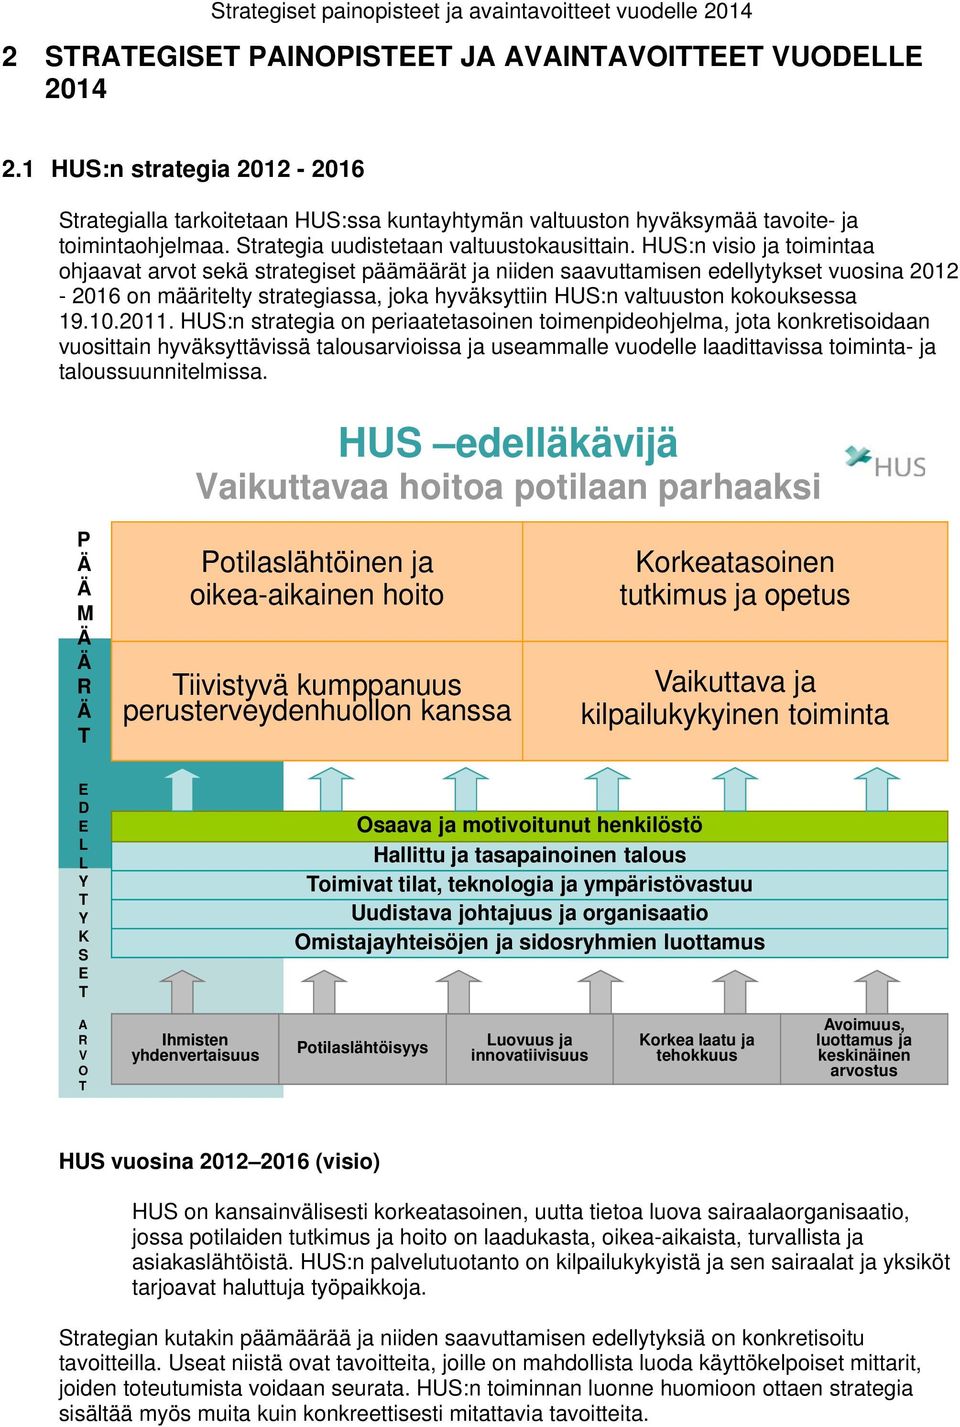 HUS:n visio toimintaa ohavat arvot sekä strategiset päämäärät niiden saavuttamisen edellytykset vuosina 2012-2016 on määritelty strategiassa, joka hyväksyttiin HUS:n valtuuston kokouksessa 19.10.2011.